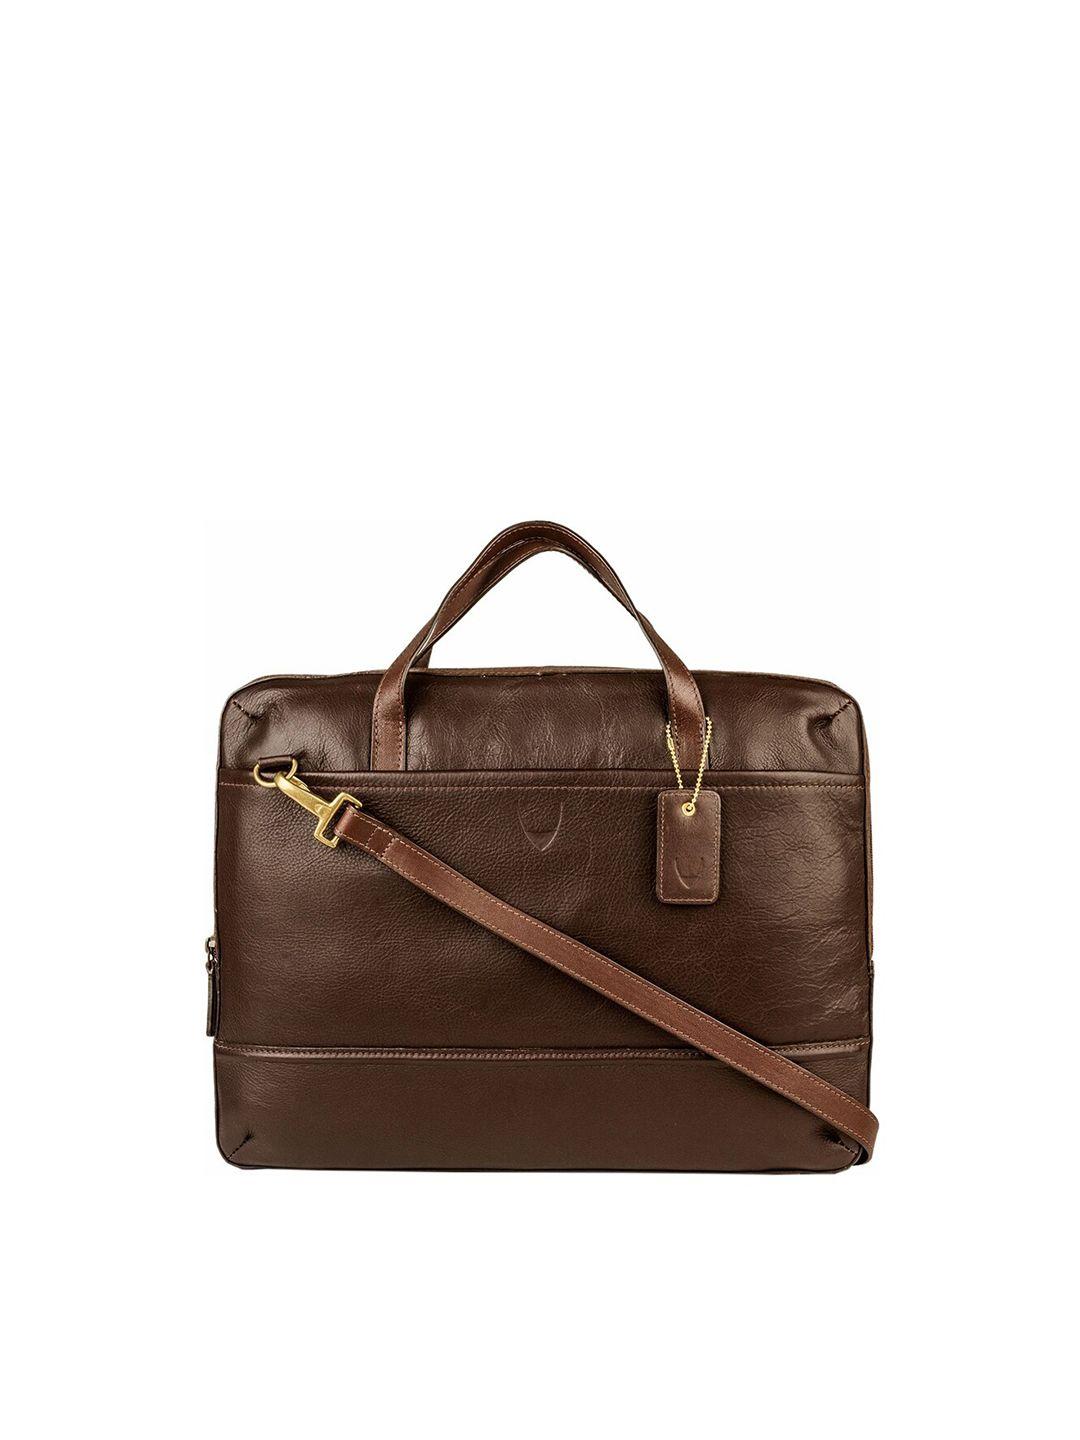 hidesign men brown leather messenger bag